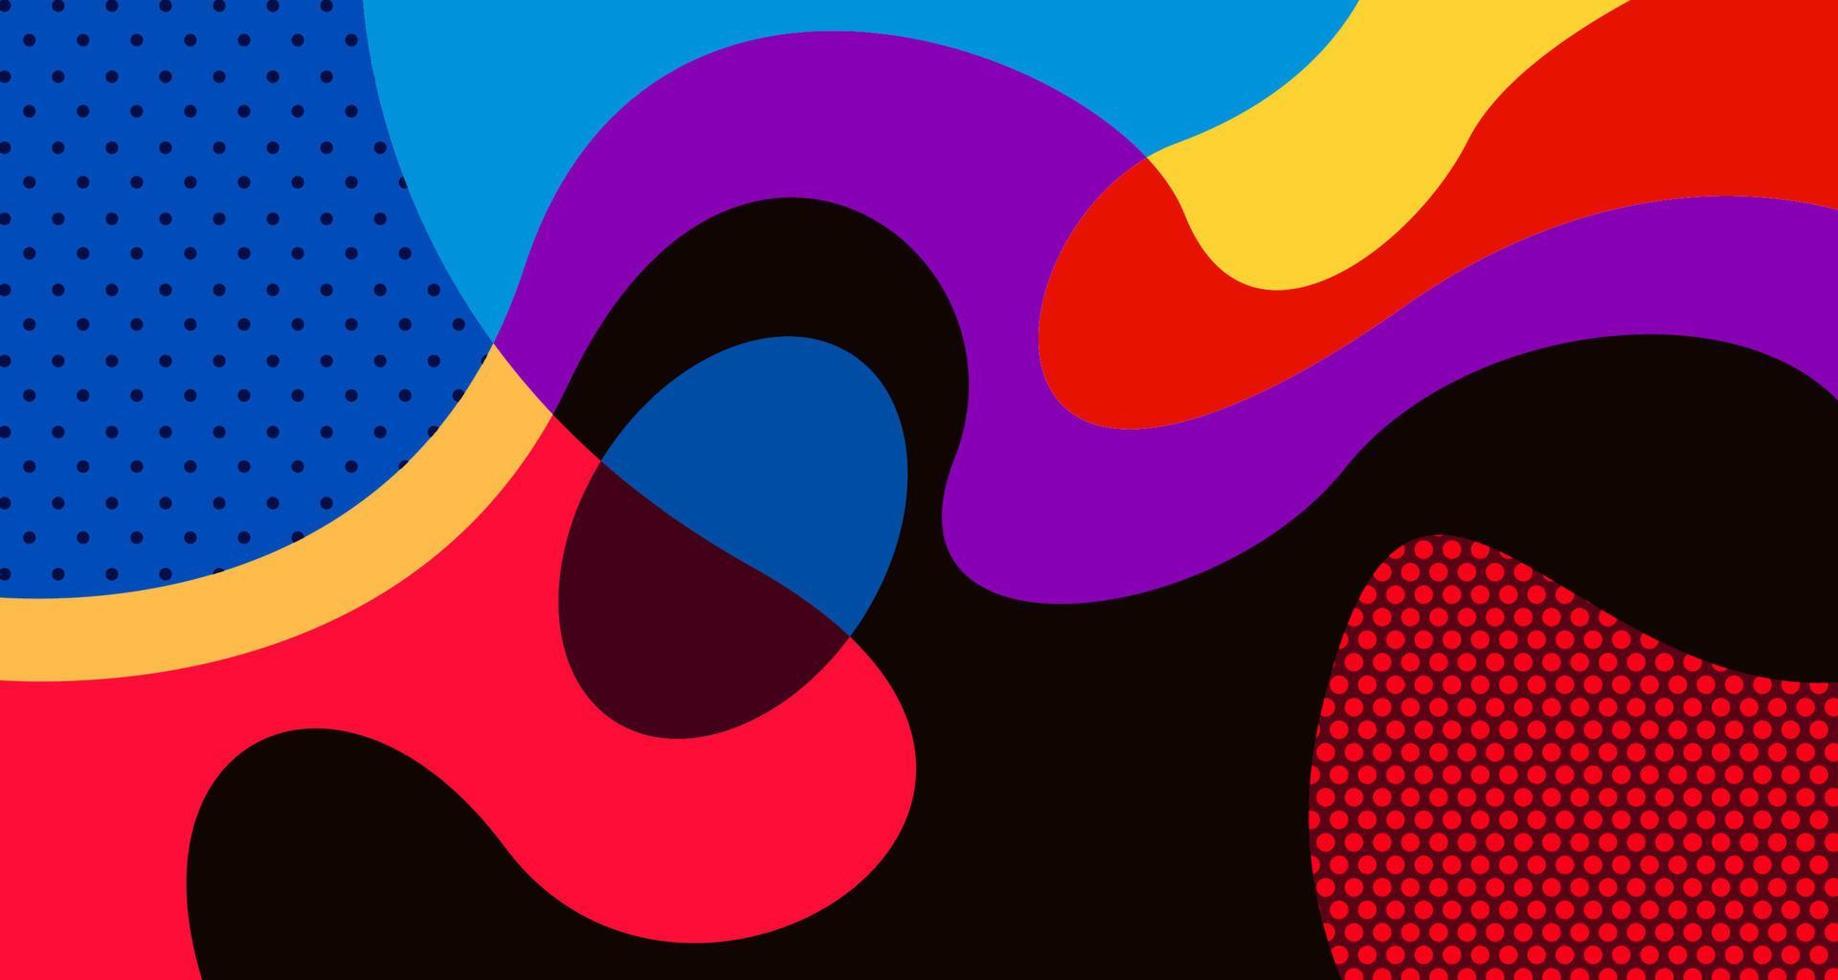 Vektor bunter abstrakter flüssiger und flüssiger Hintergrund für Social-Media-Banner